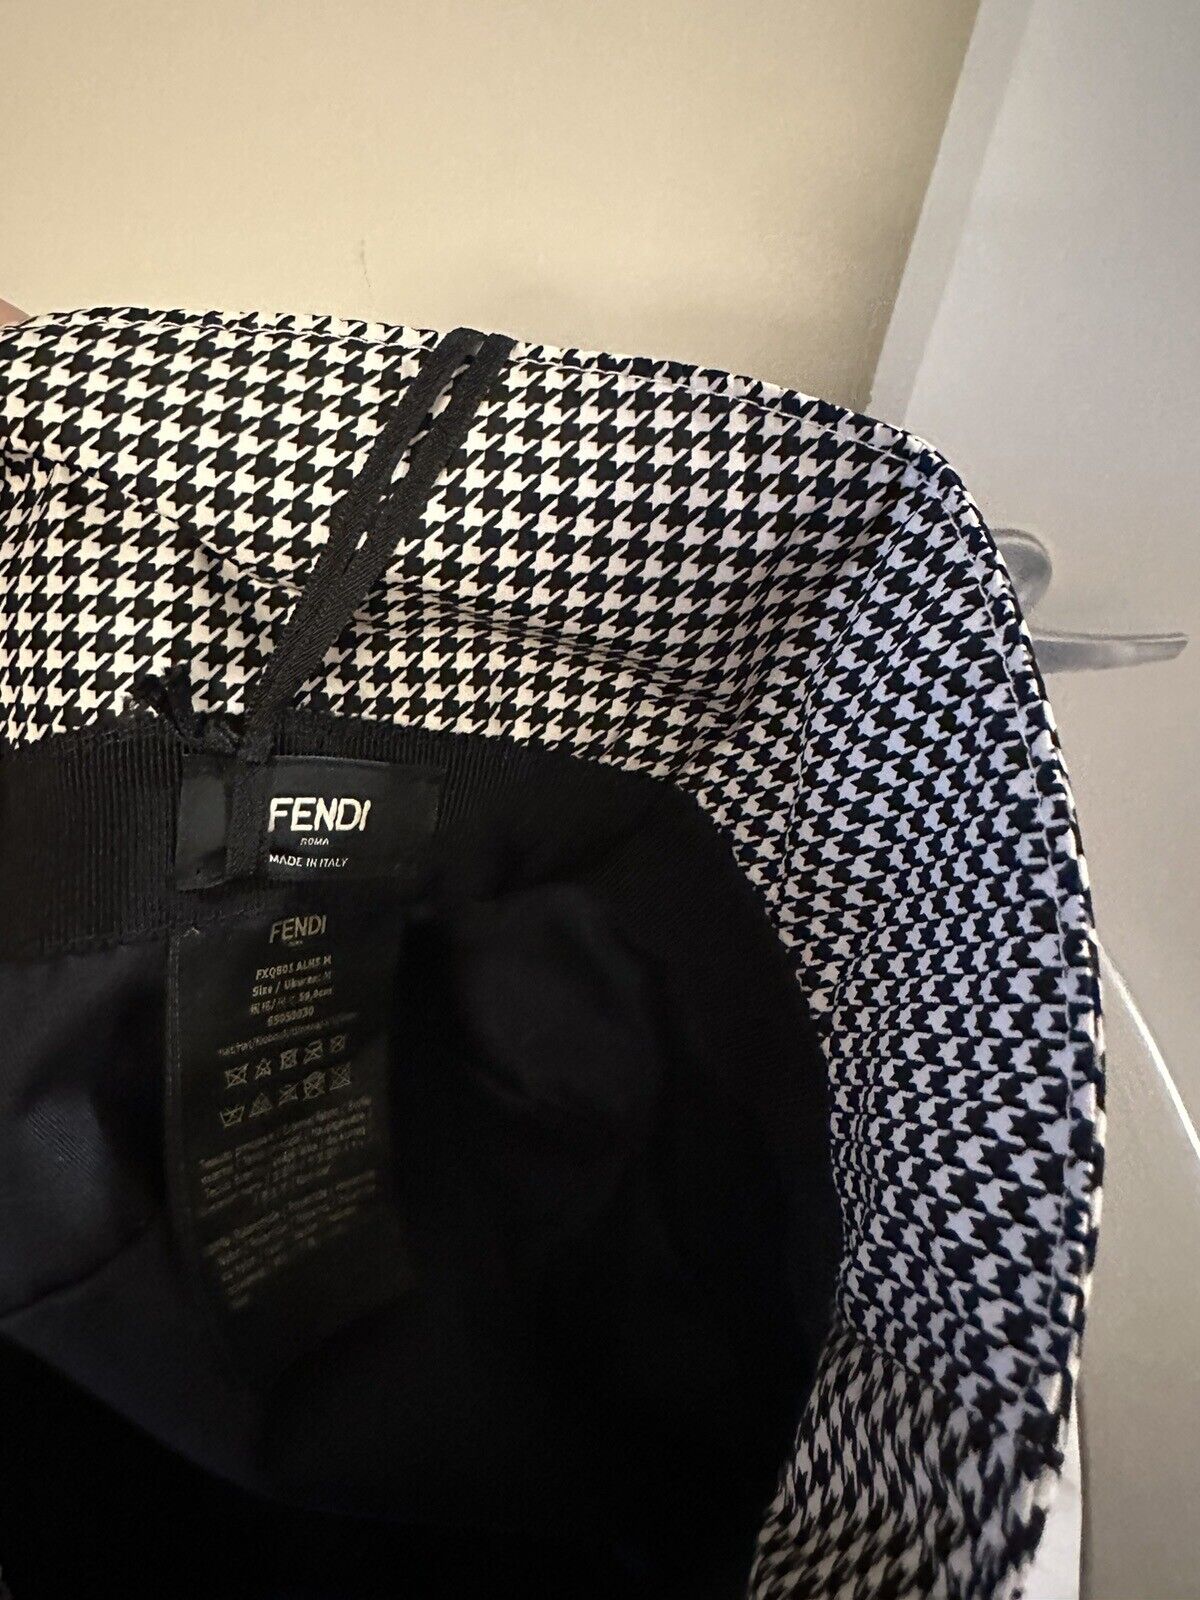 NWT 950 $ Fendi Classic Nylon FF Logo Bucket Hat Schwarz/Weiß M FXQ801